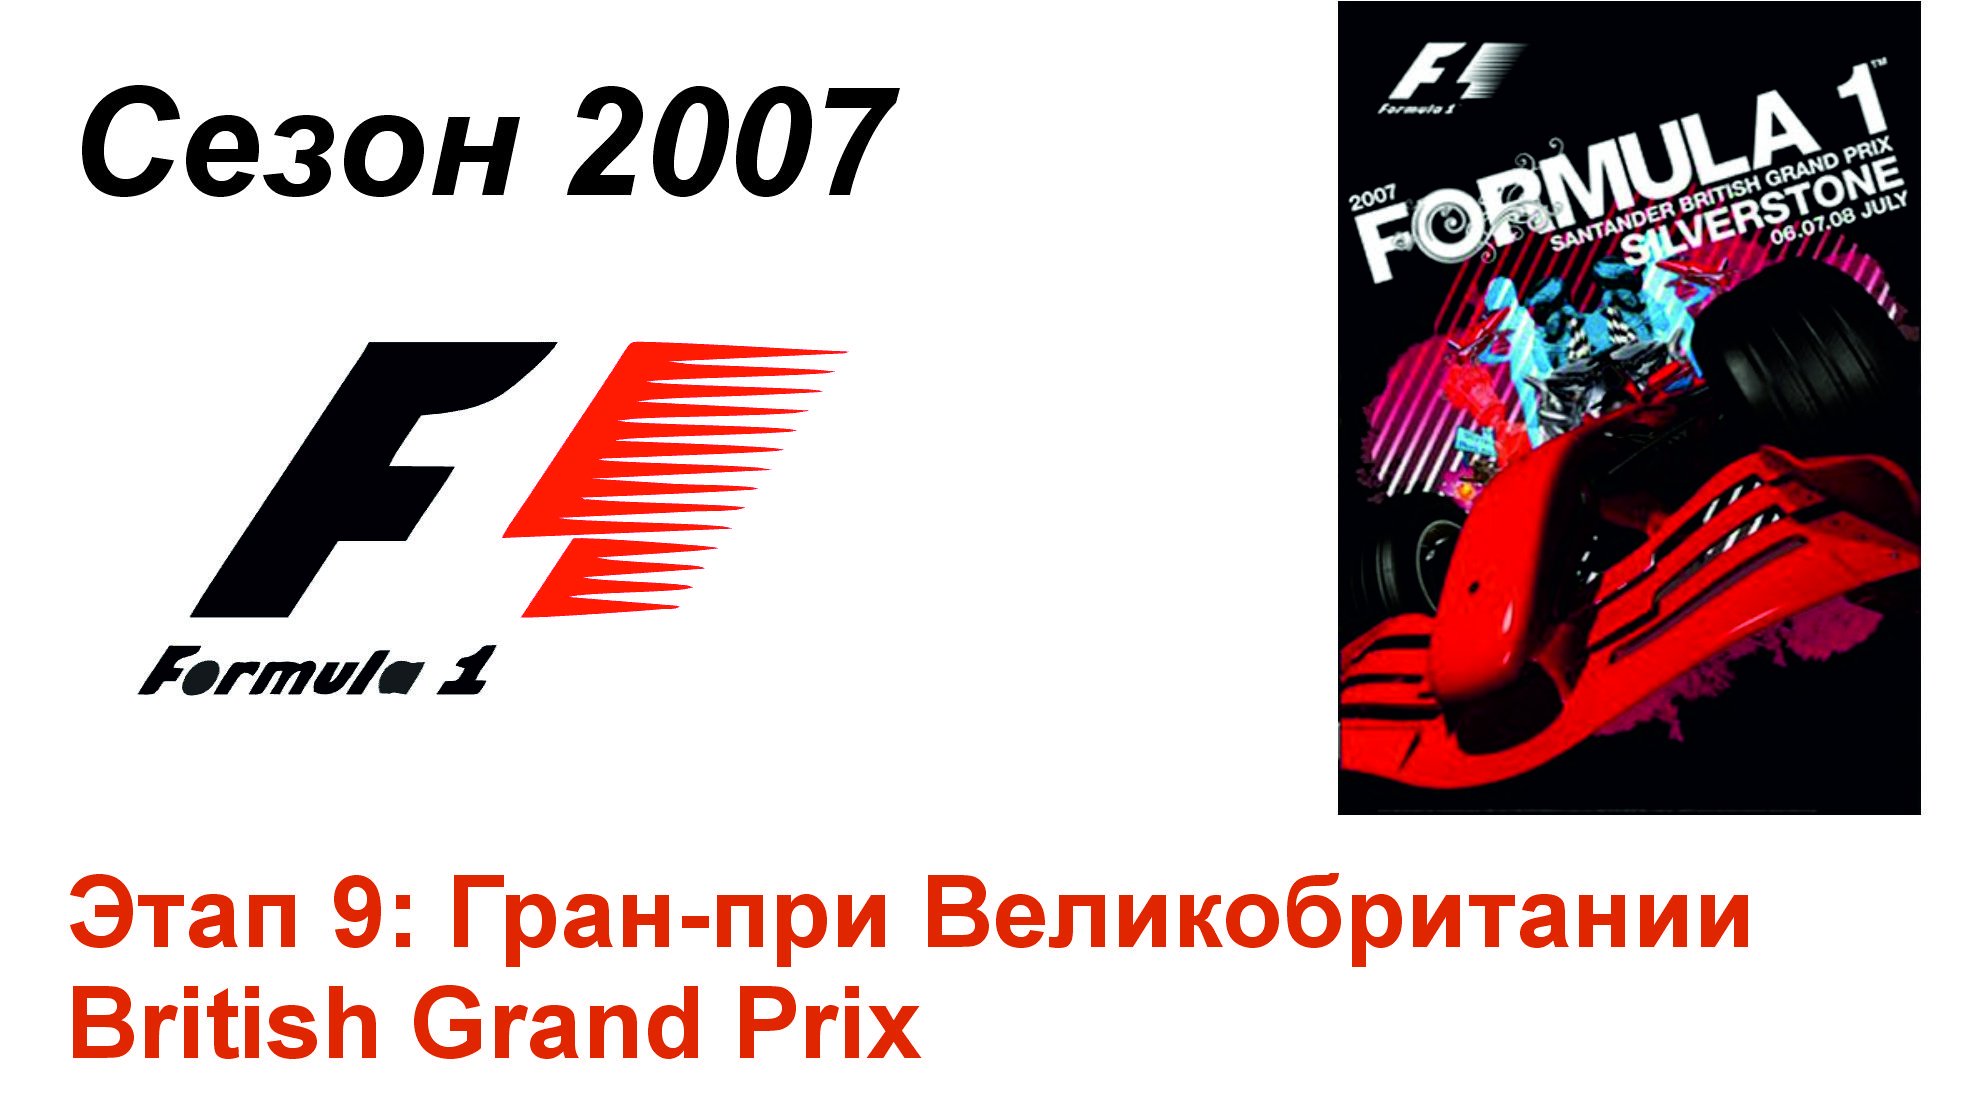 Формула-1 / Formula-1 (2007). Этап 9: Гран-при Великобритании (Рус+Англ/Rus+Eng)